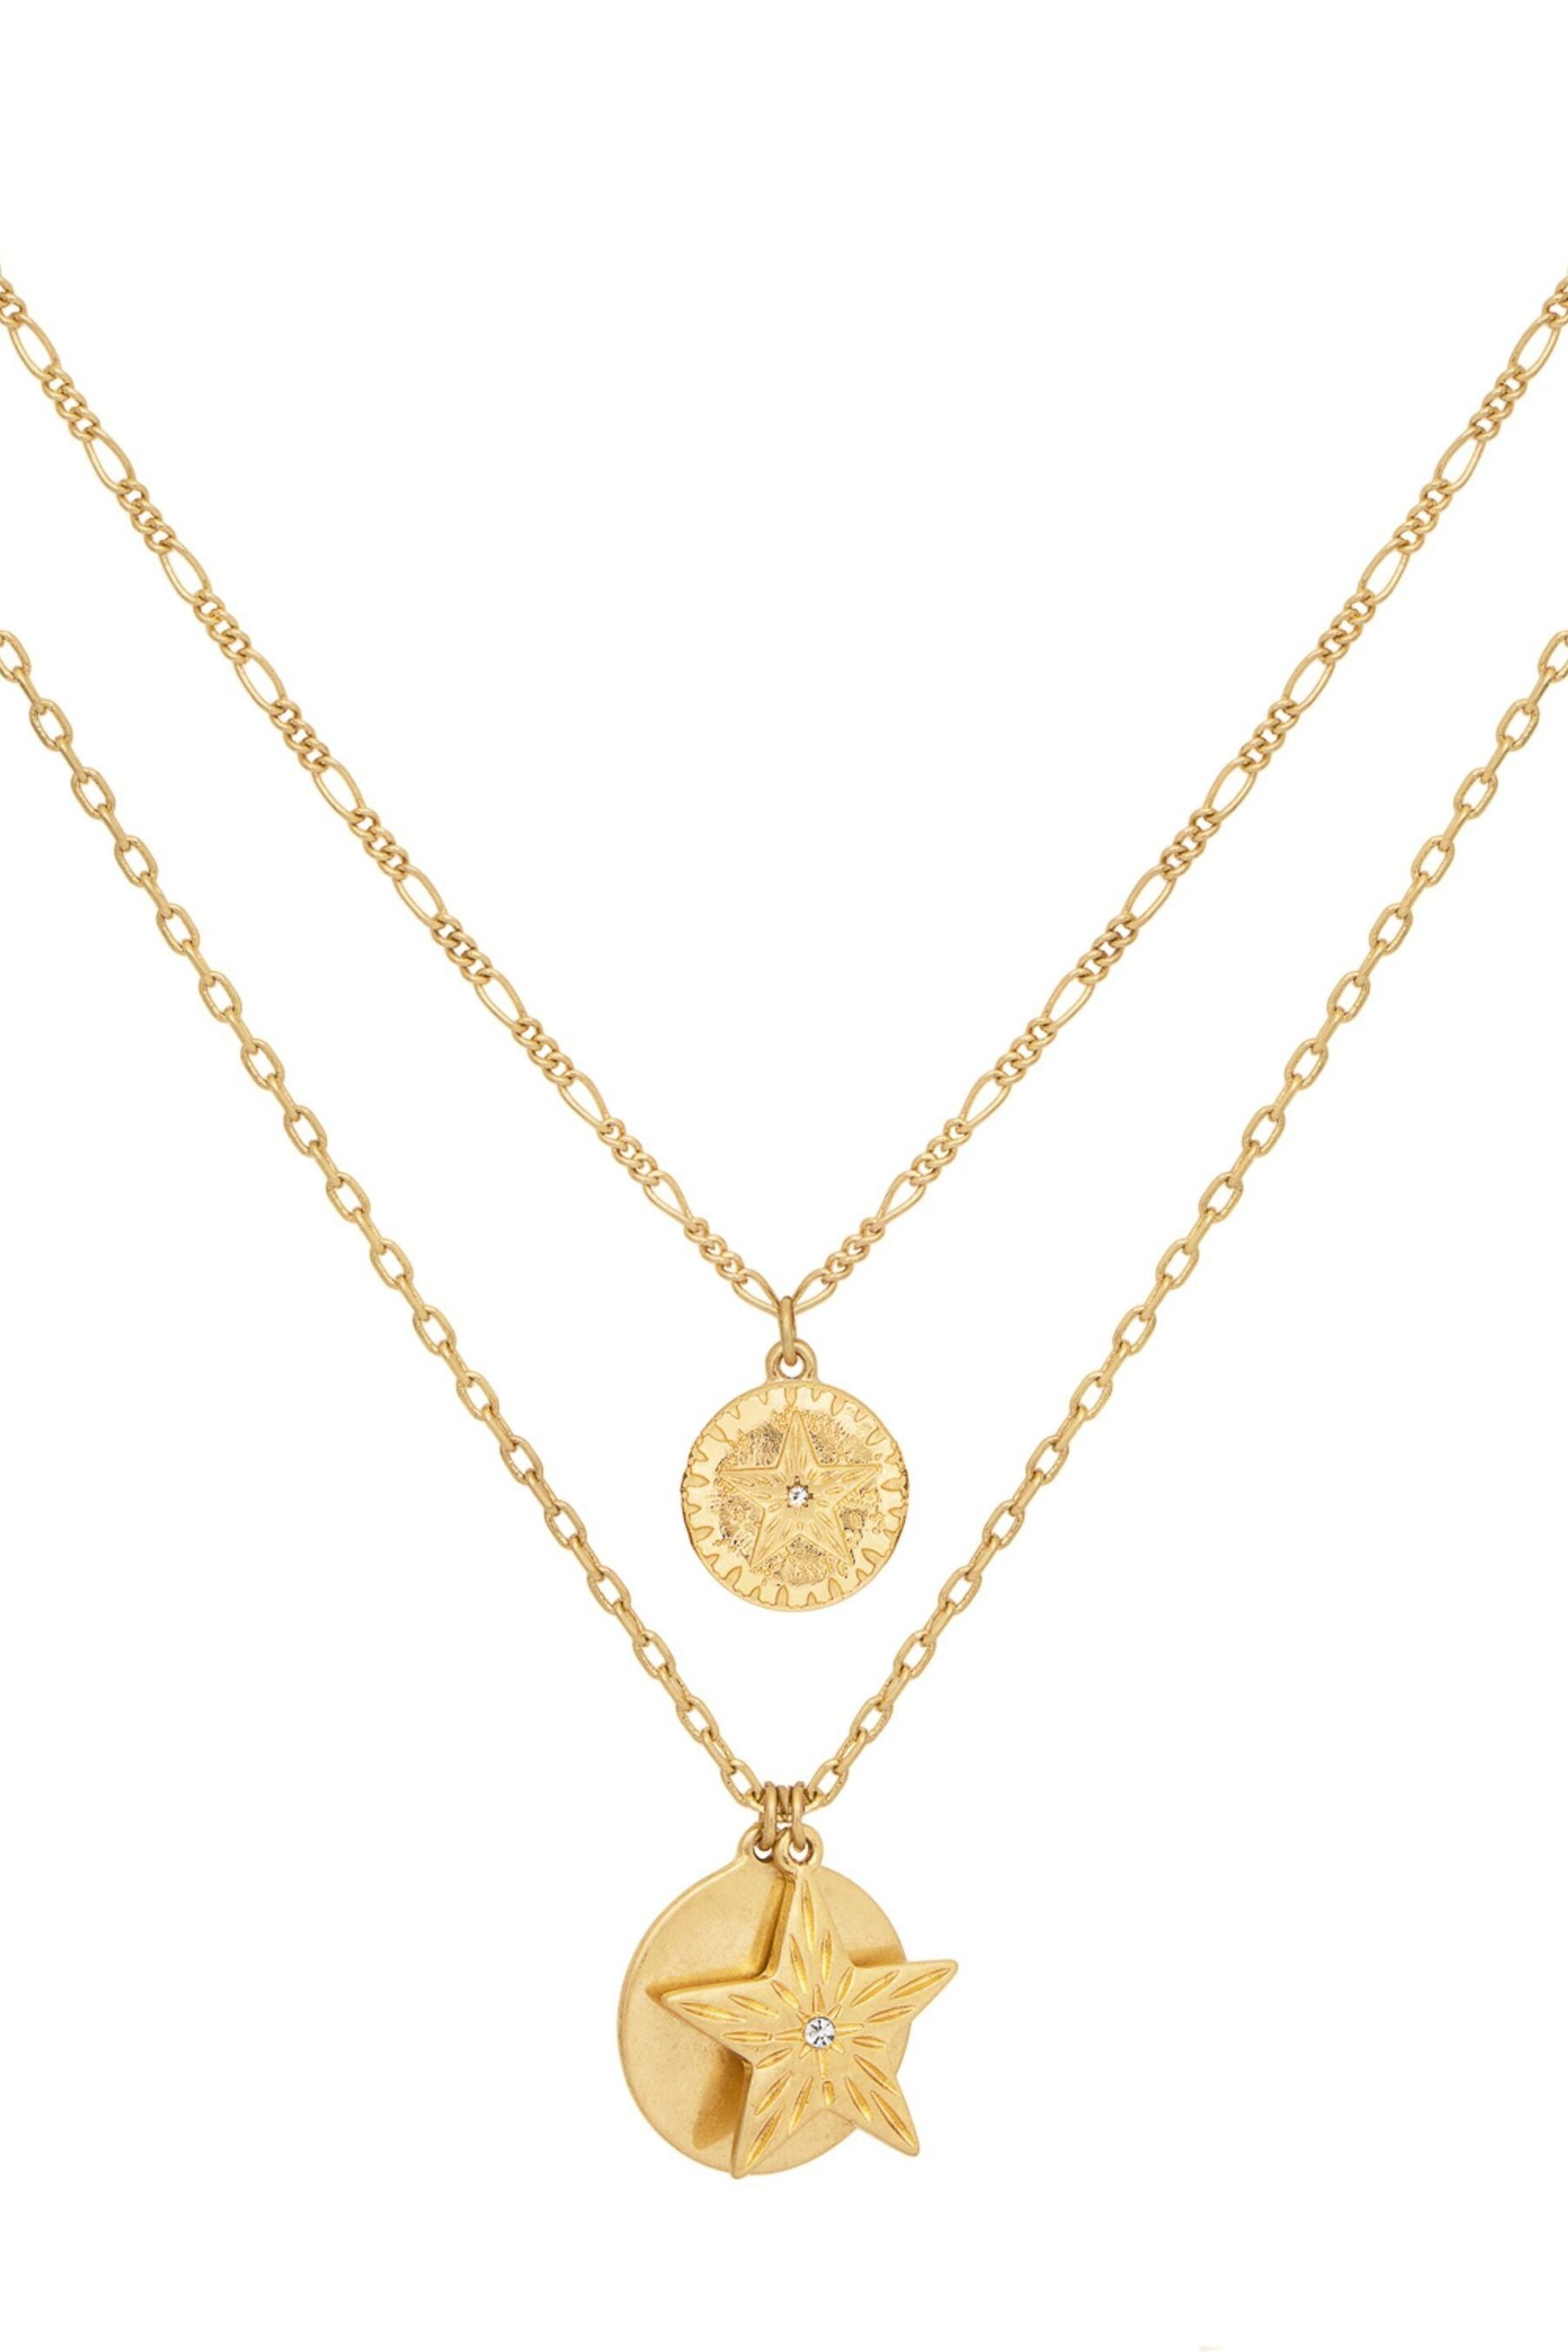 Bibi Bijoux Gold Tone 'Starburst' Layered Necklace - Image 3 of 5